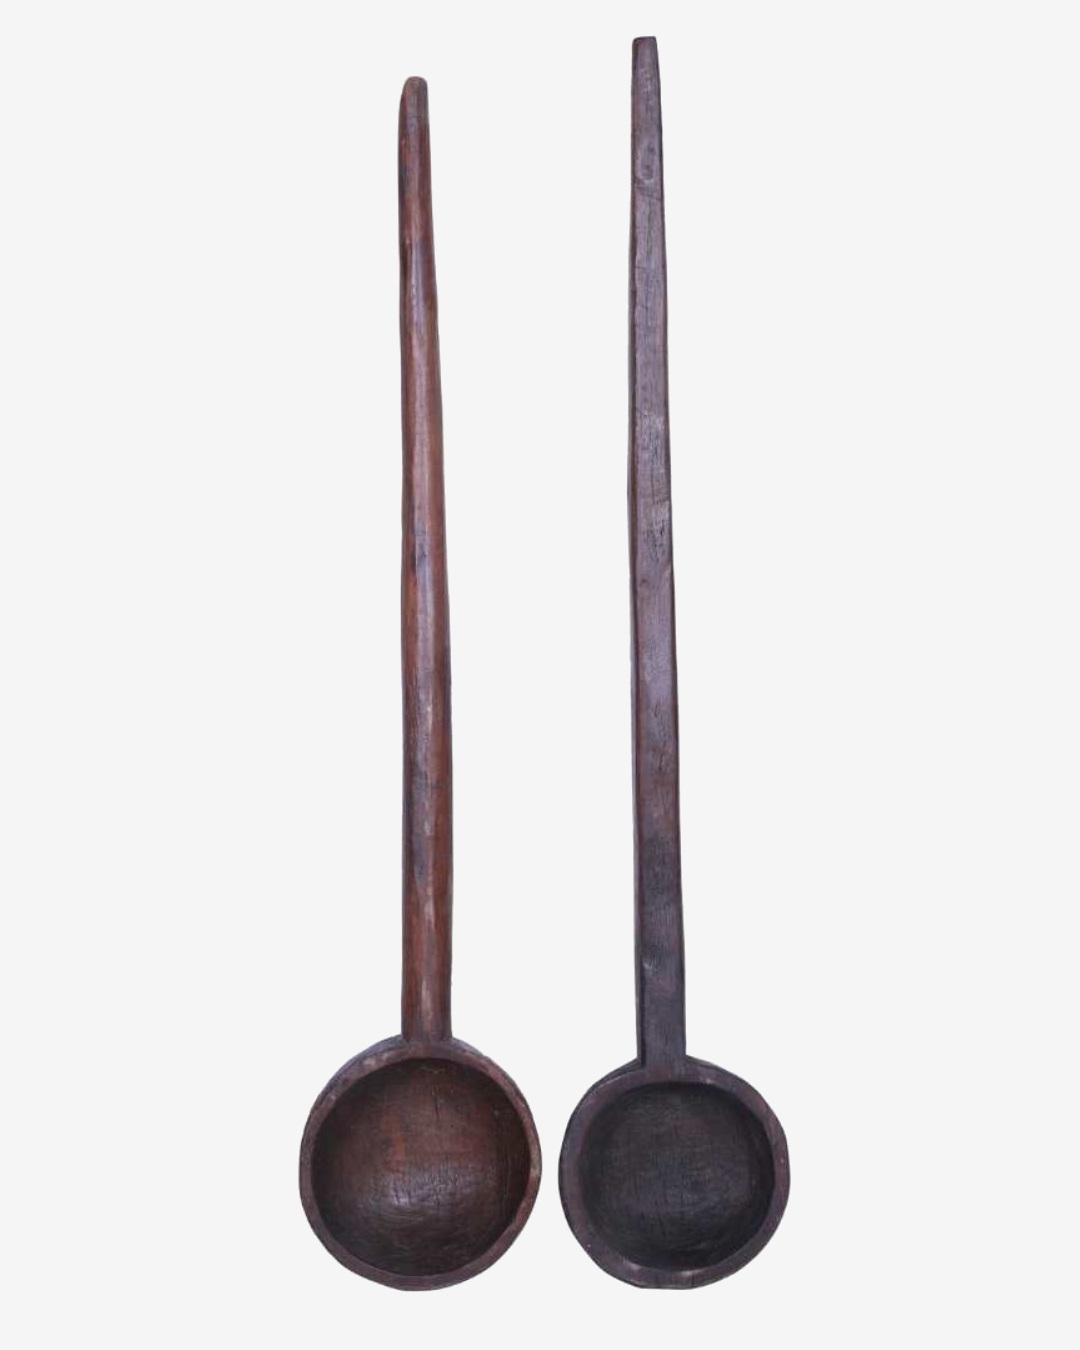 Vintage wooden spoon display art